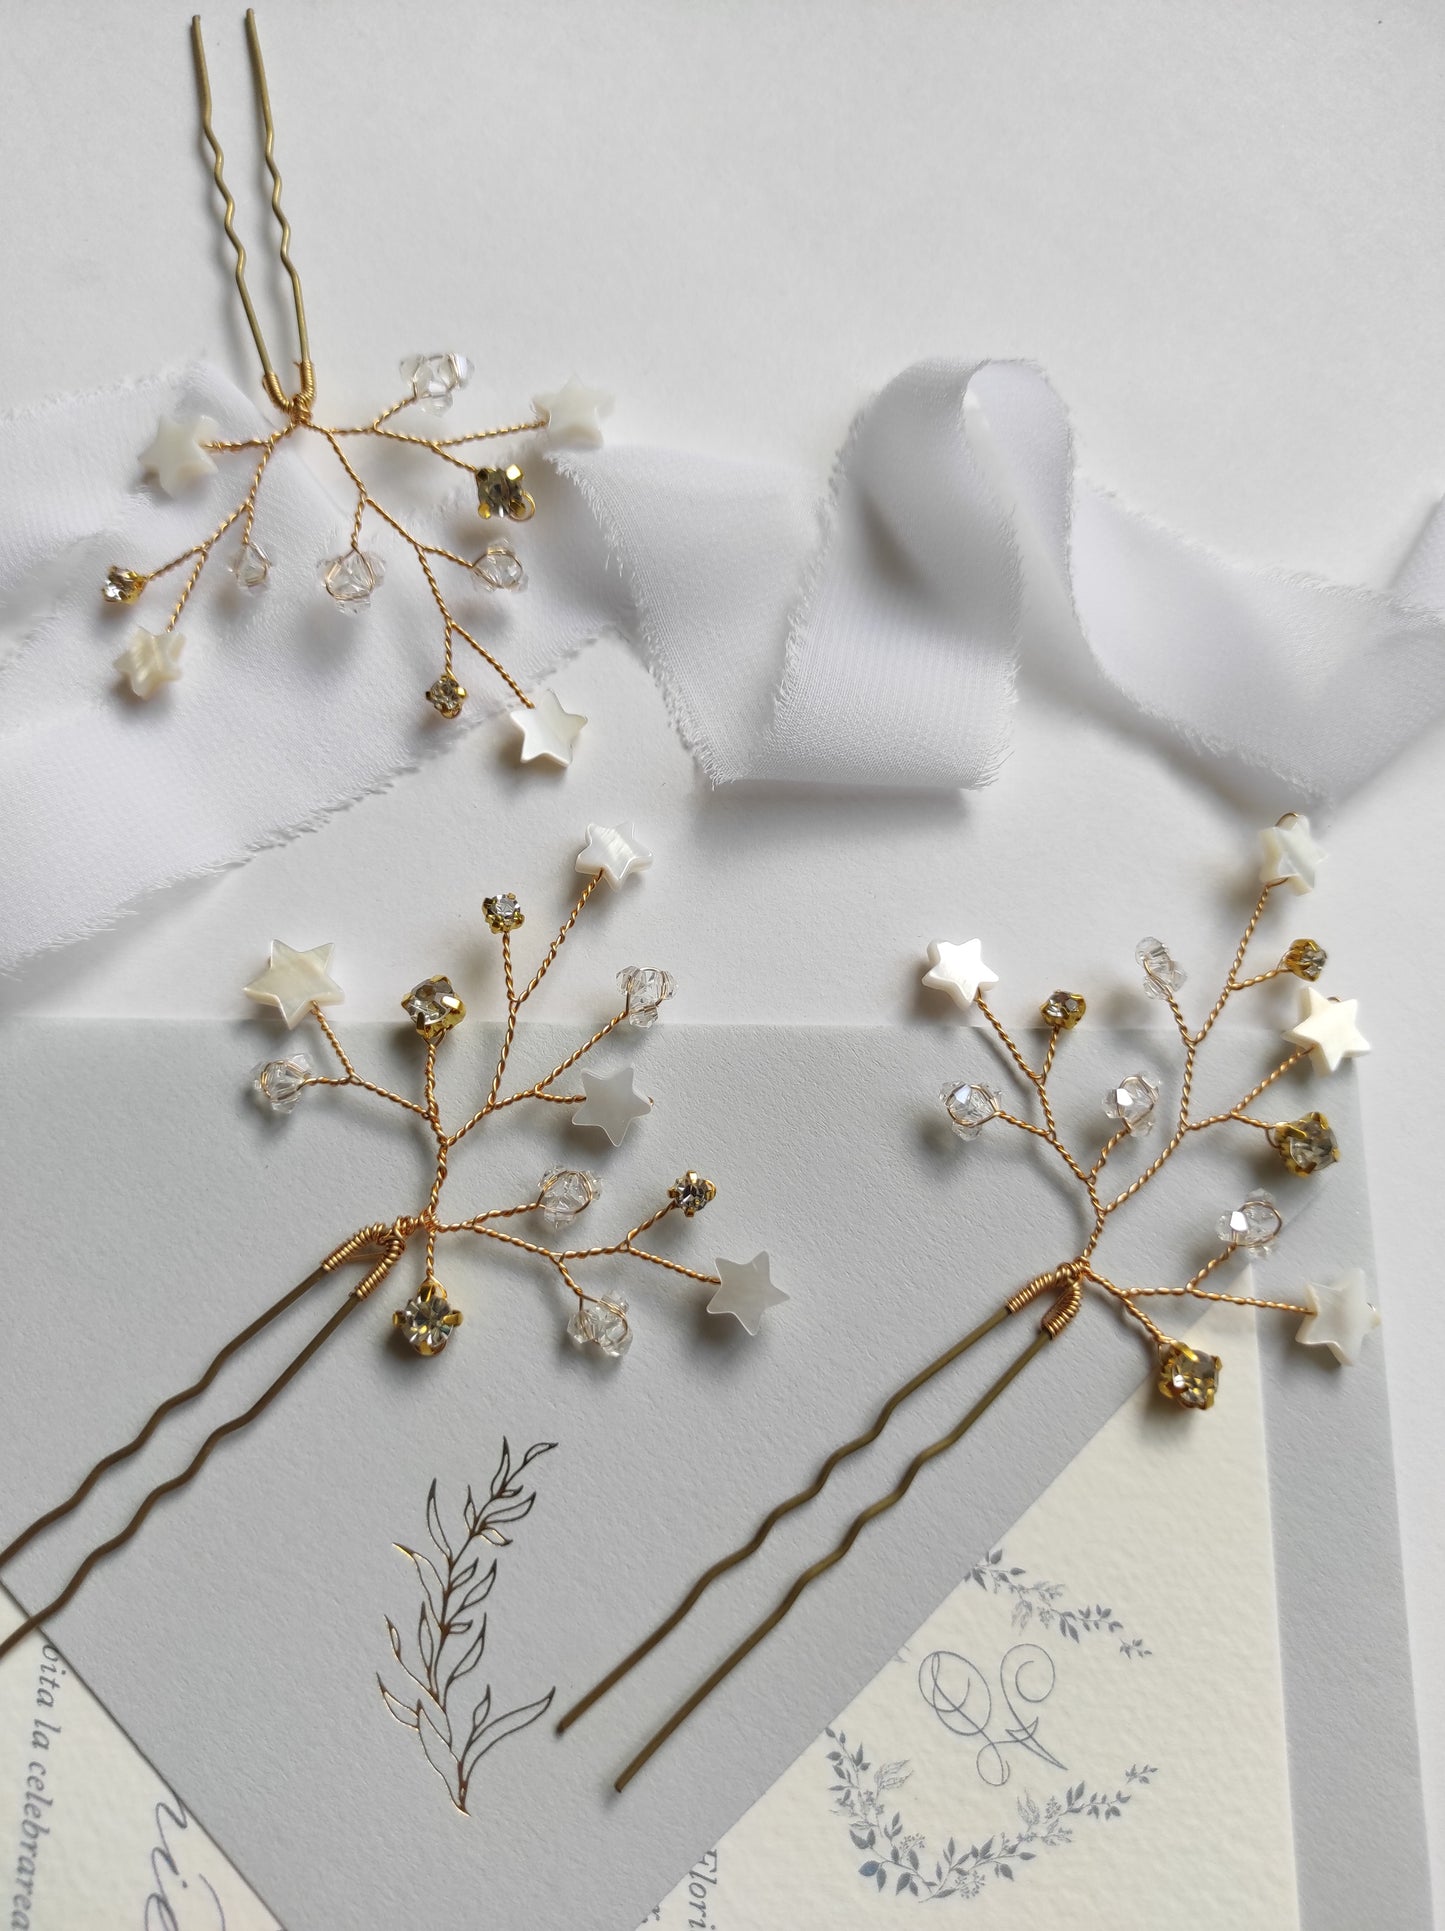 Bridal hair pins - STARLEY | Modern star pins hair accessories for brides